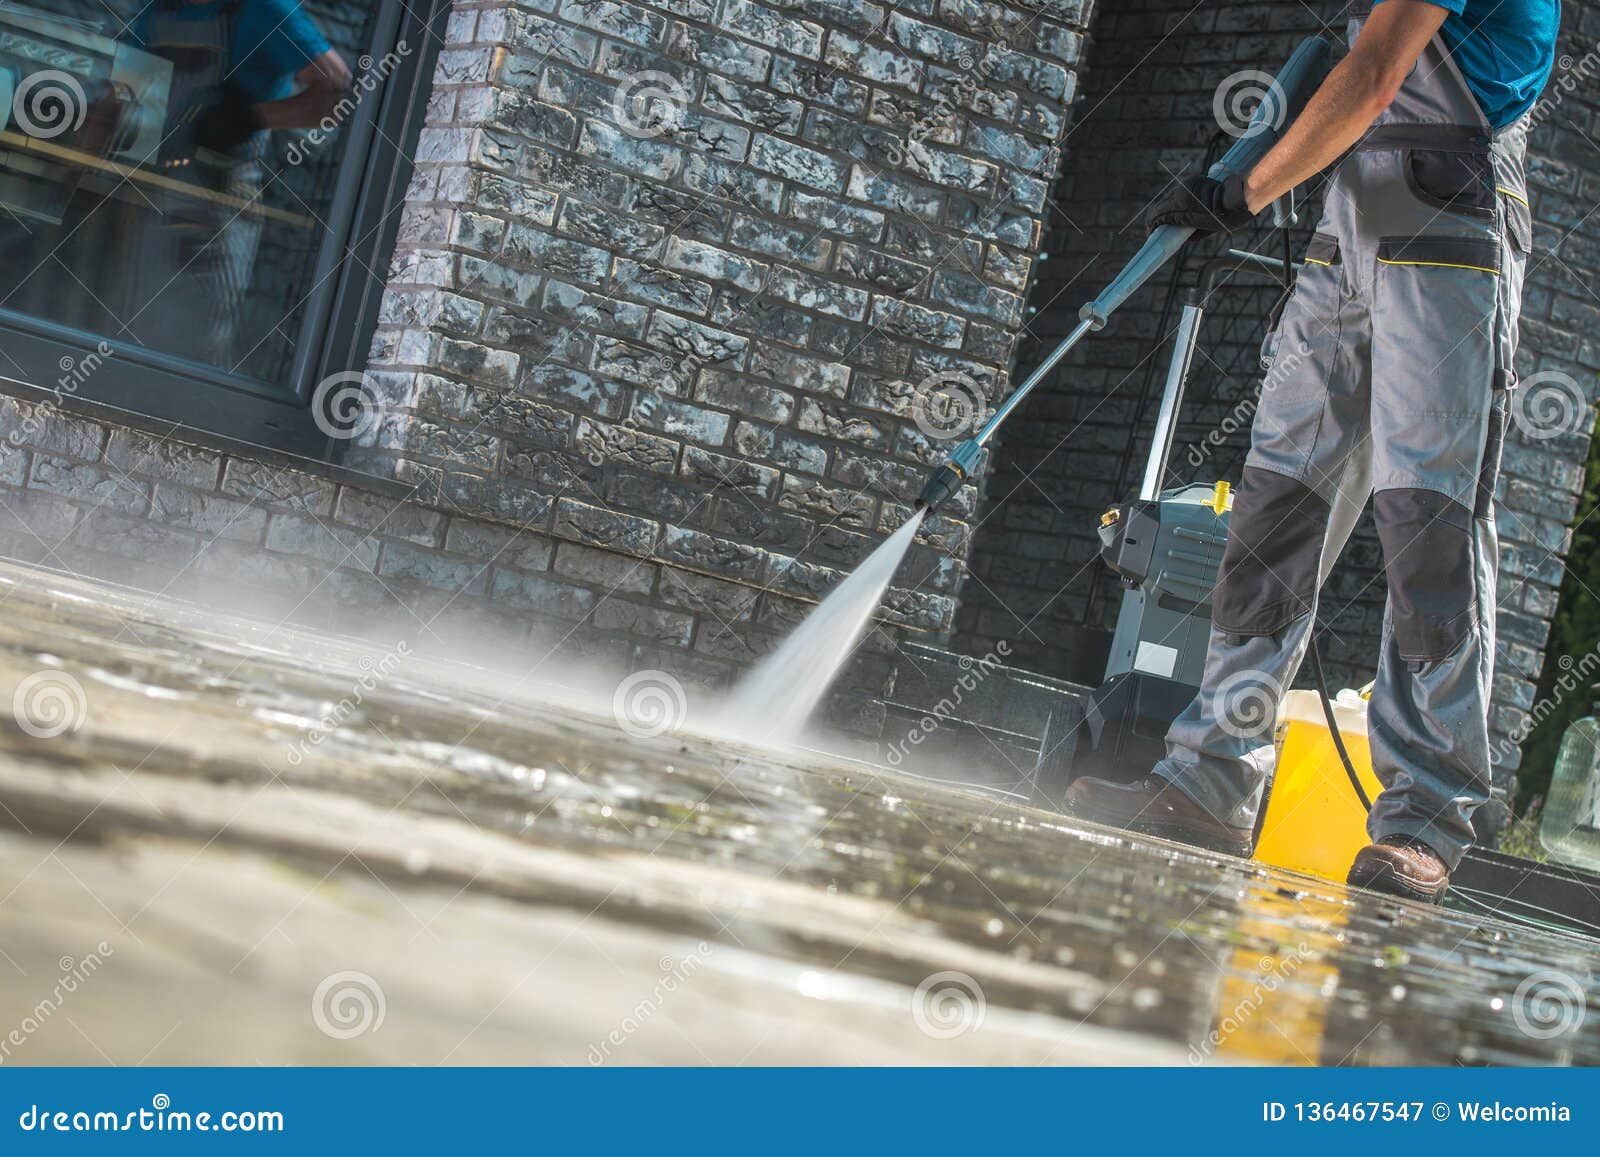 men washing driveway